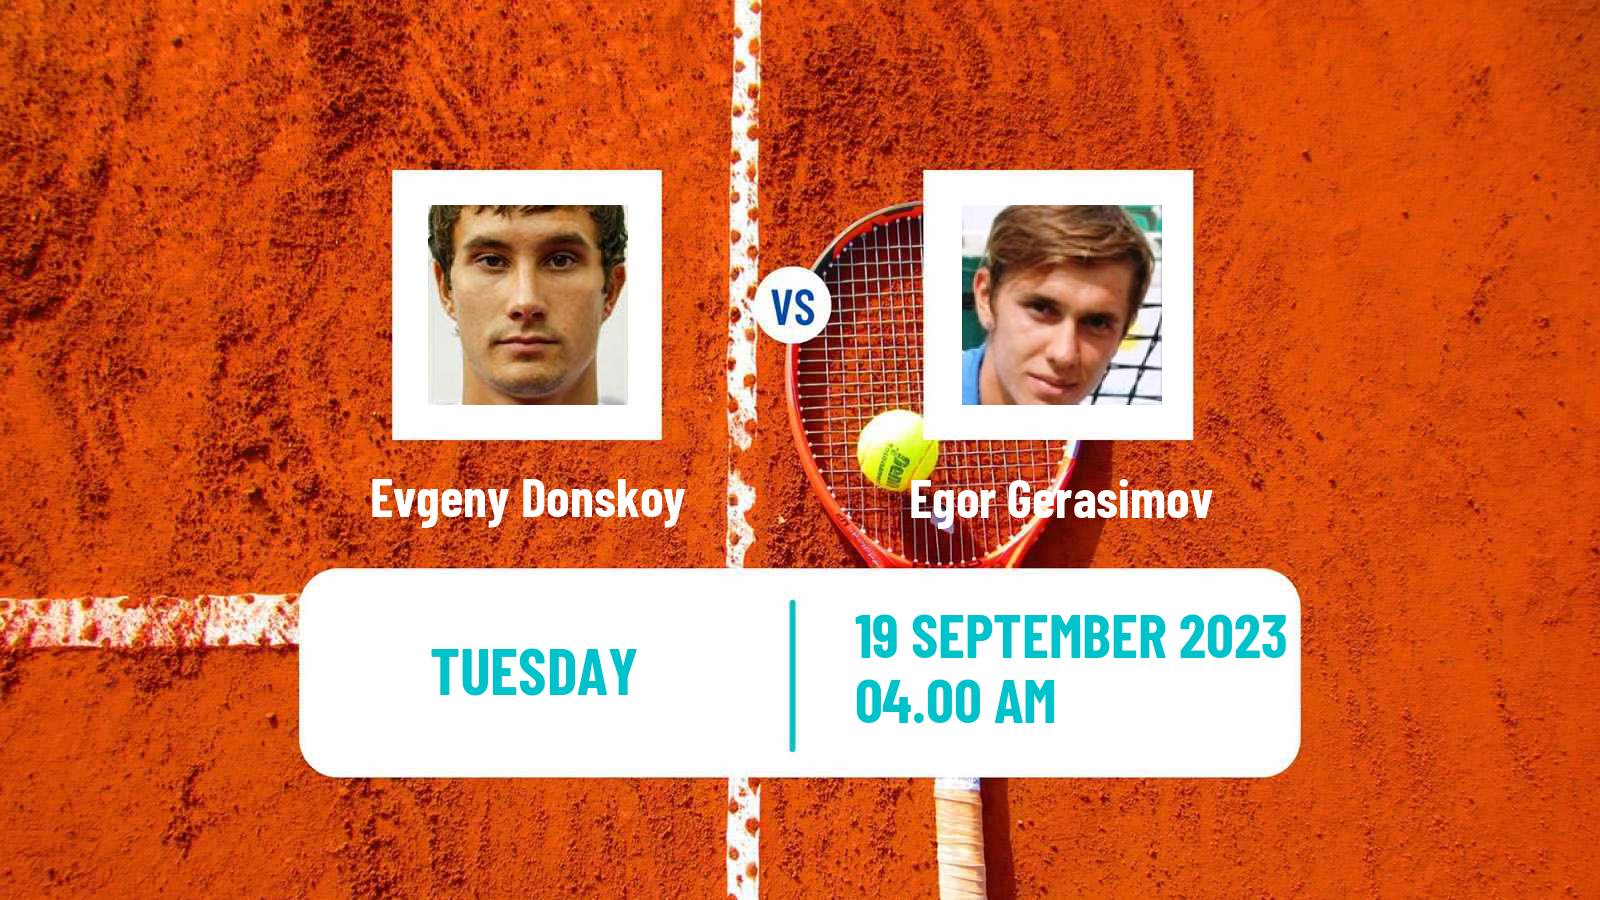 Tennis ATP Chengdu Evgeny Donskoy - Egor Gerasimov